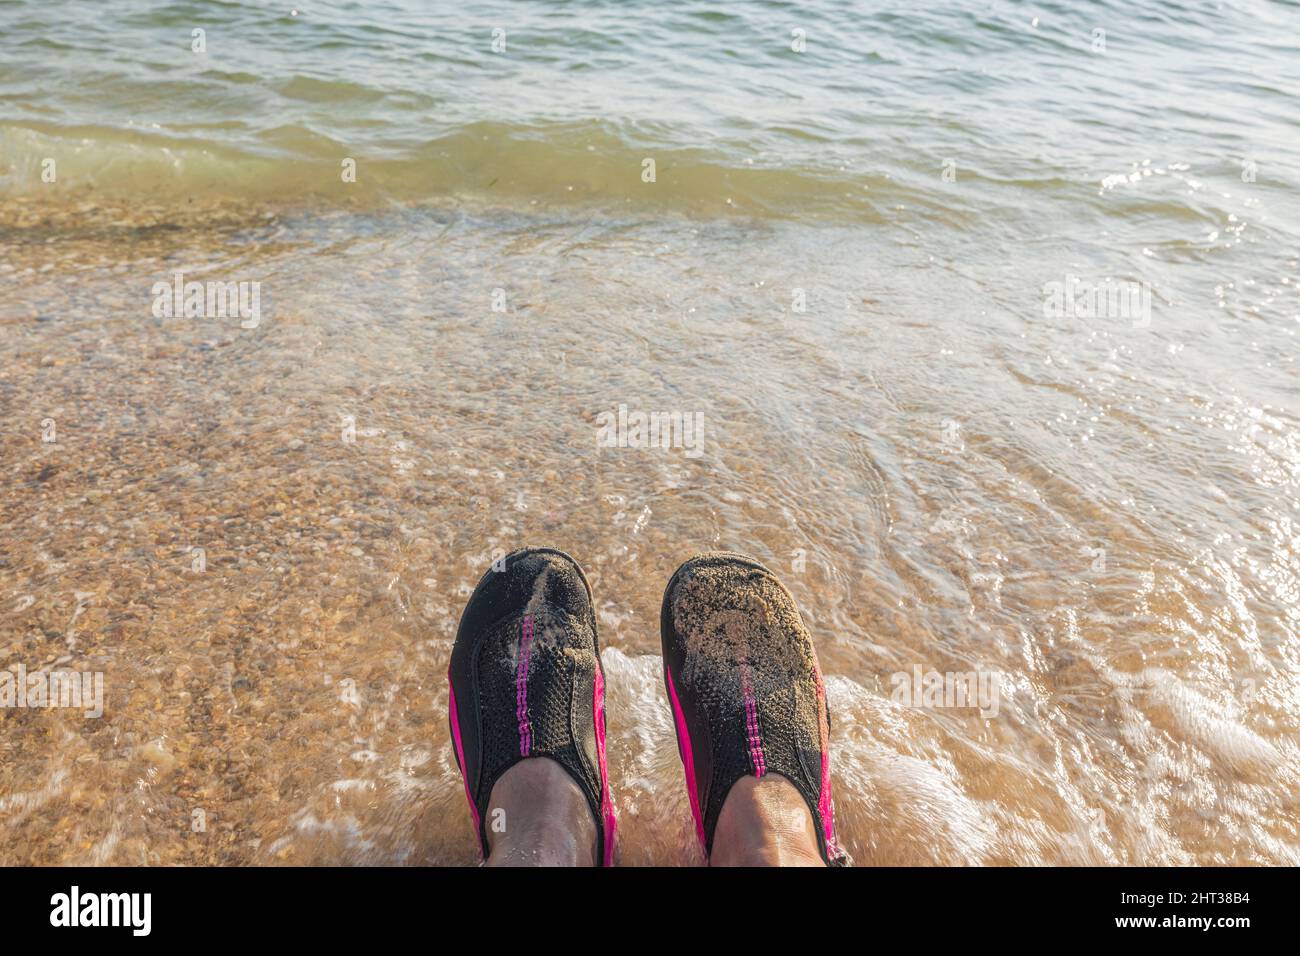 Wunderschöne Aussicht auf den Sandstrand und Badeschuhe auf den Füßen eines Mannes vor dem Hintergrund Meer. Griechenland. Stockfoto